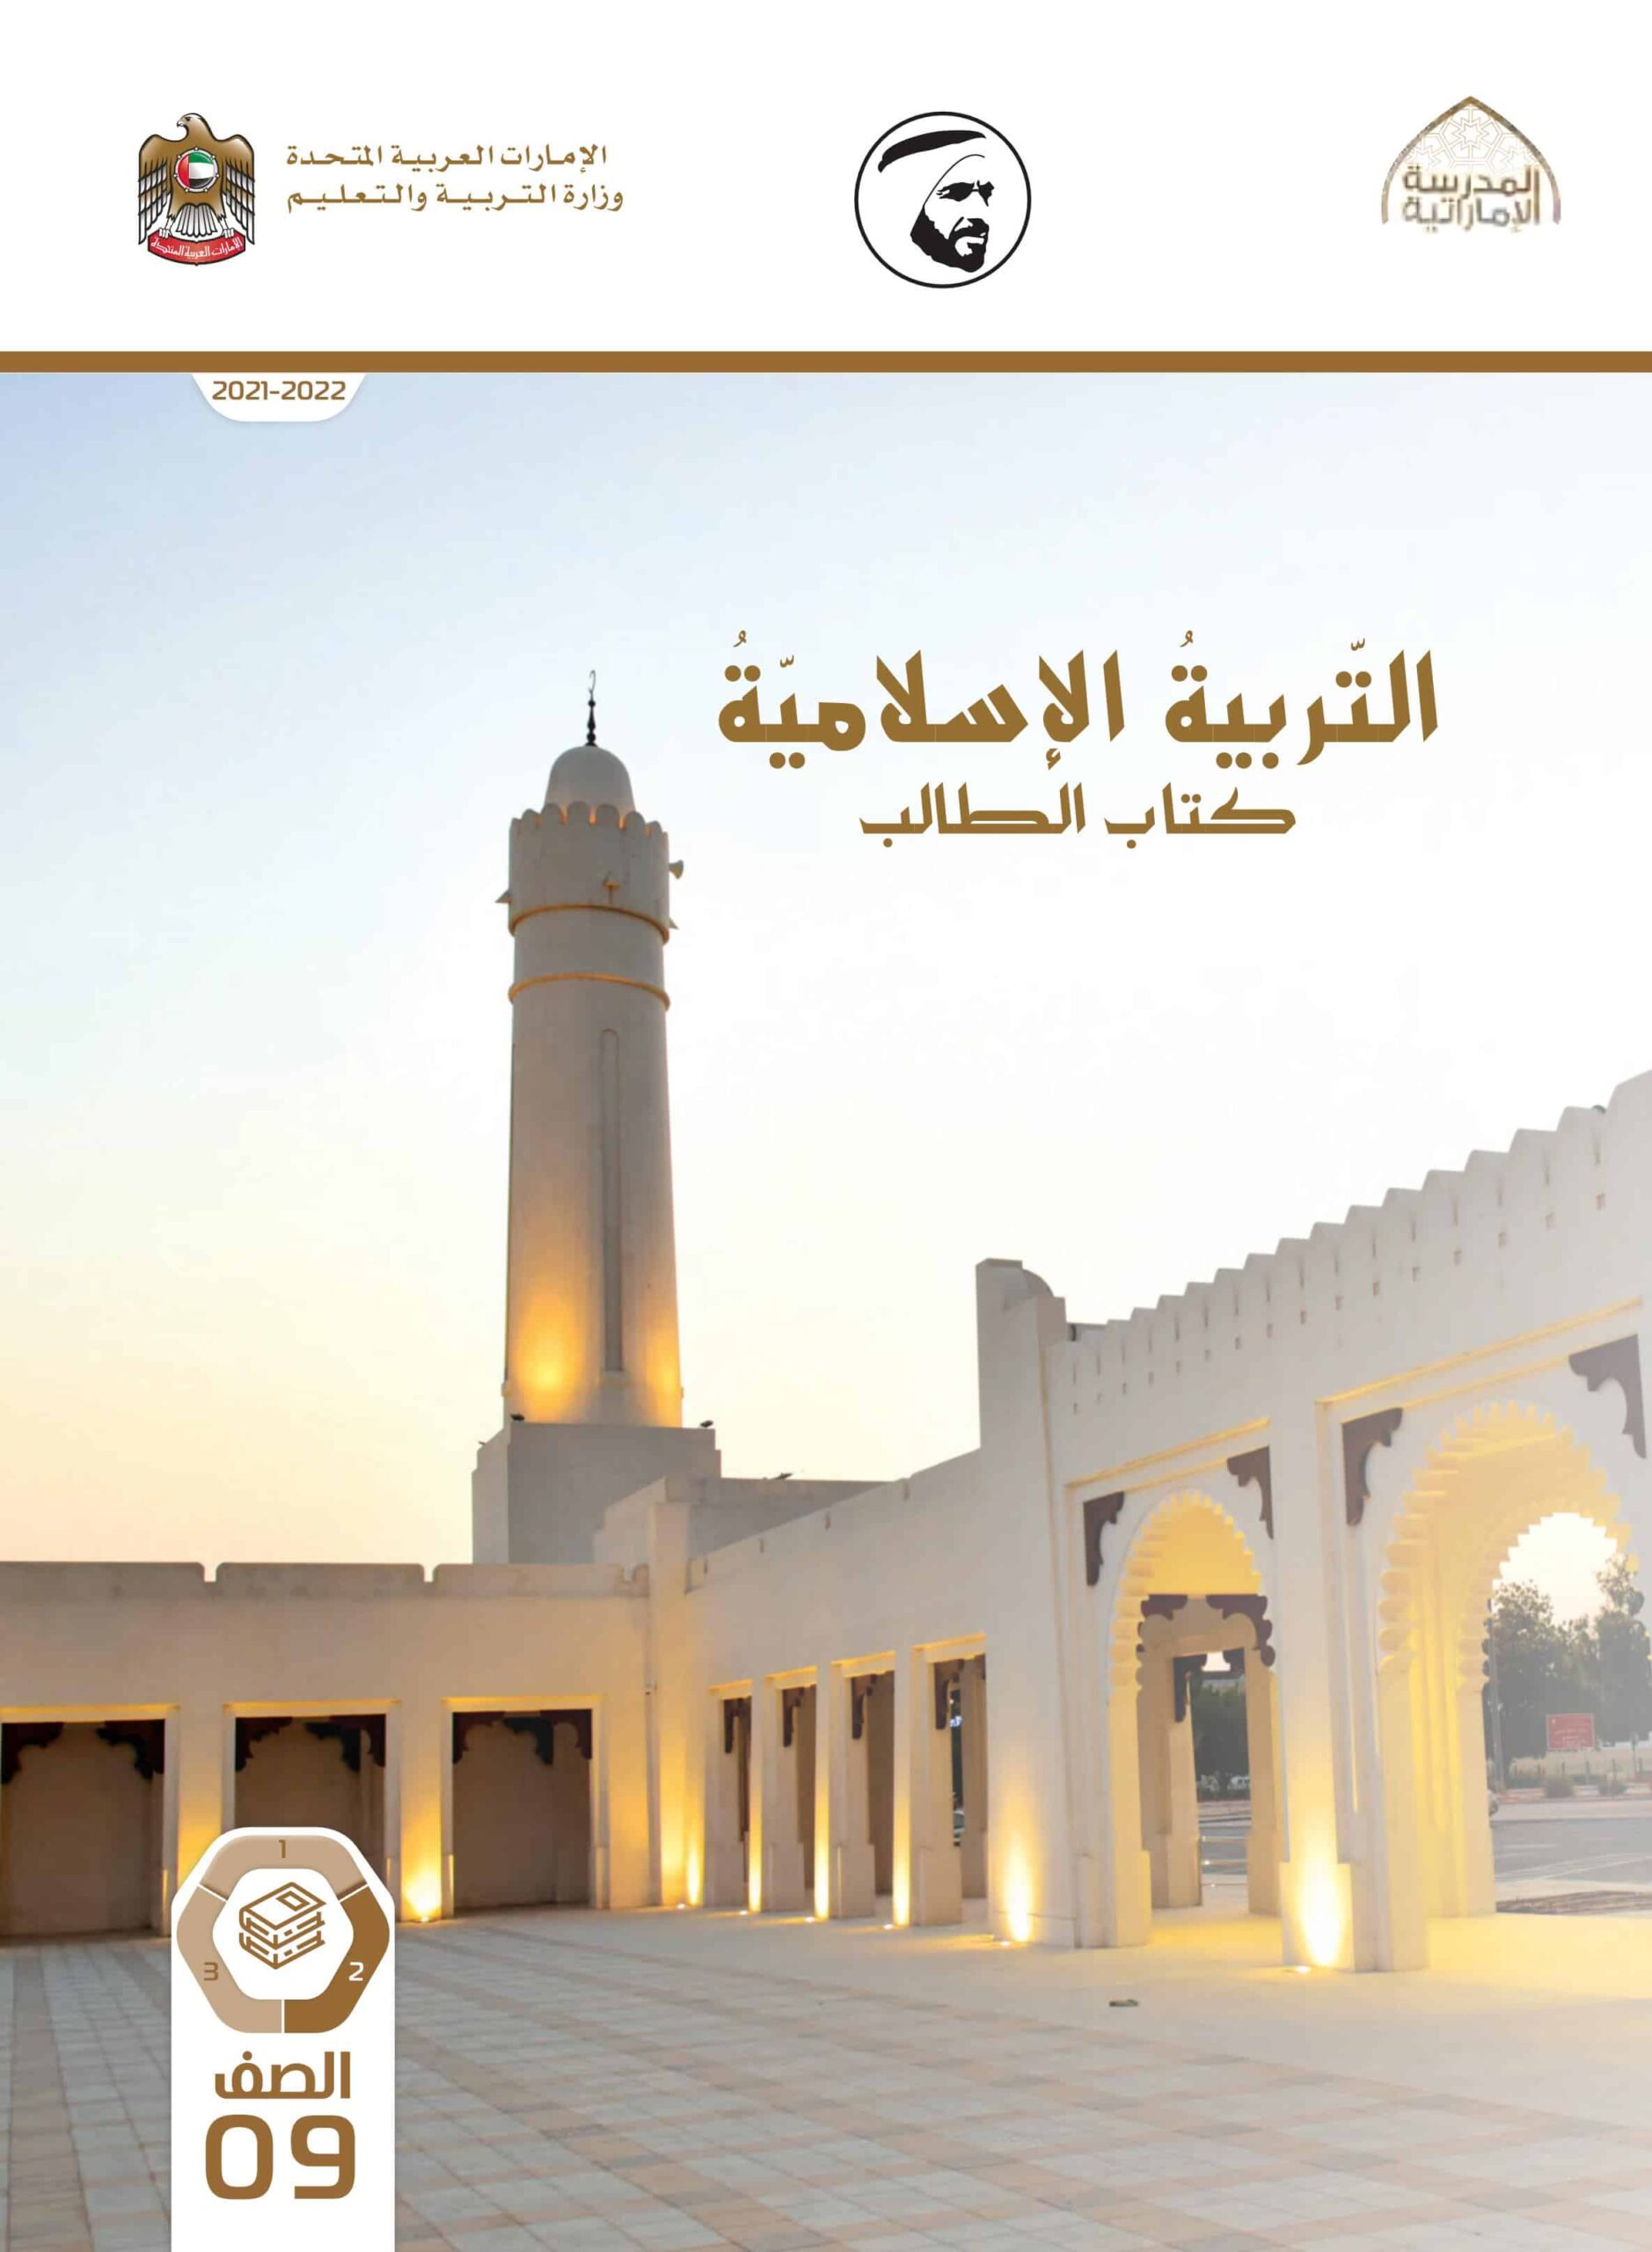 كتاب الطالب التربية الإسلامية الصف التاسع الفصل الدراسي كتاب الطالب التربية الإسلامية الصف التاسع الفصل الدراسي الثاني 2021-2022الثاني 2021-2022